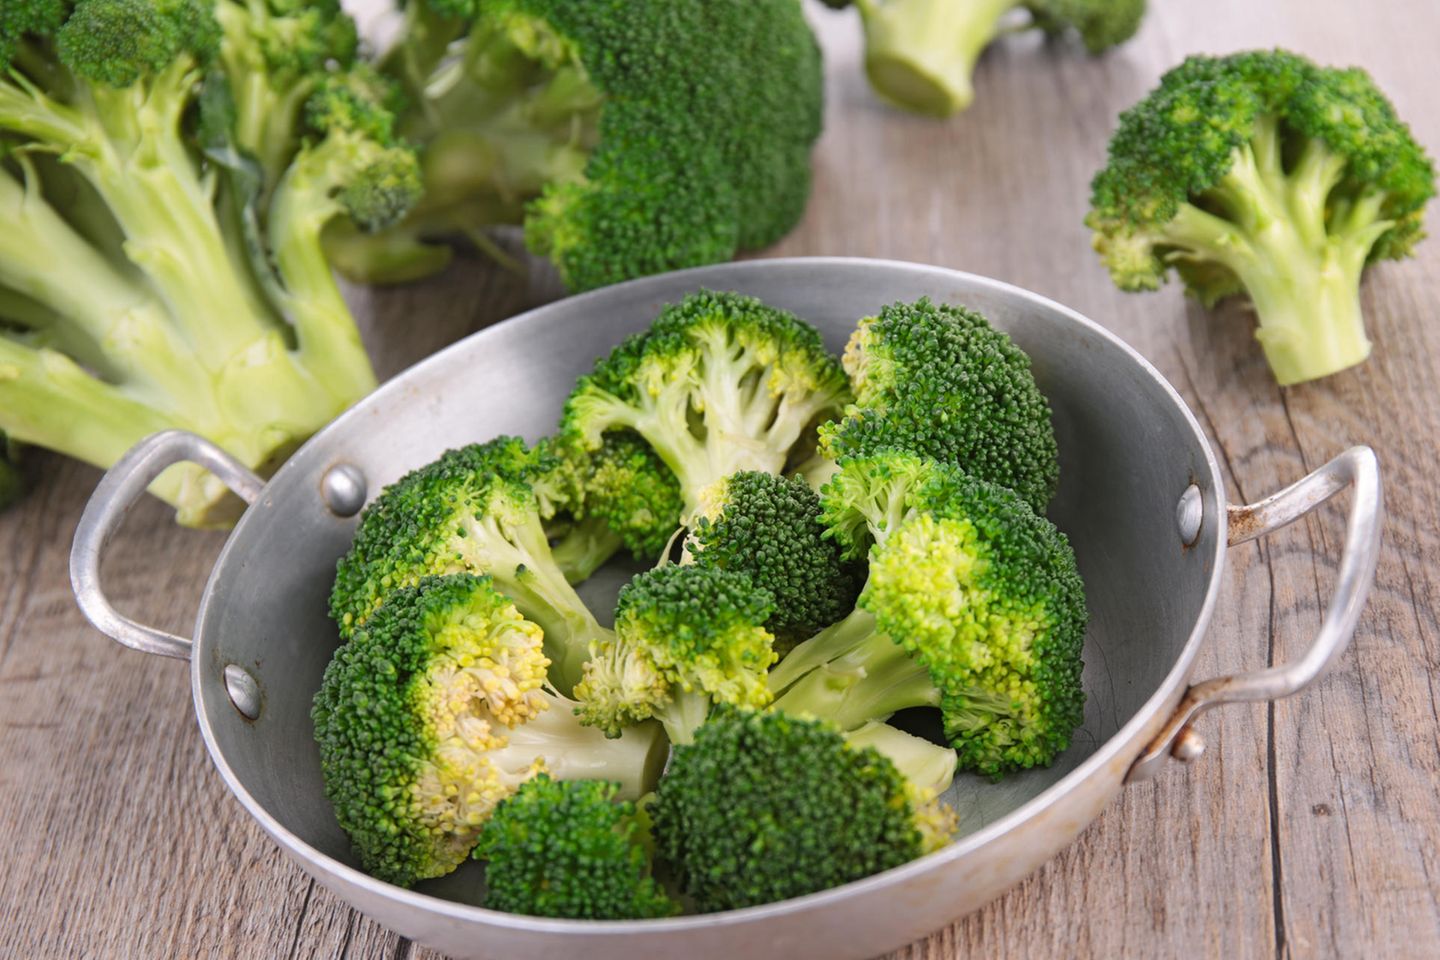 Brokkoli dünsten: Brokkoliröschen in einer Pfanne